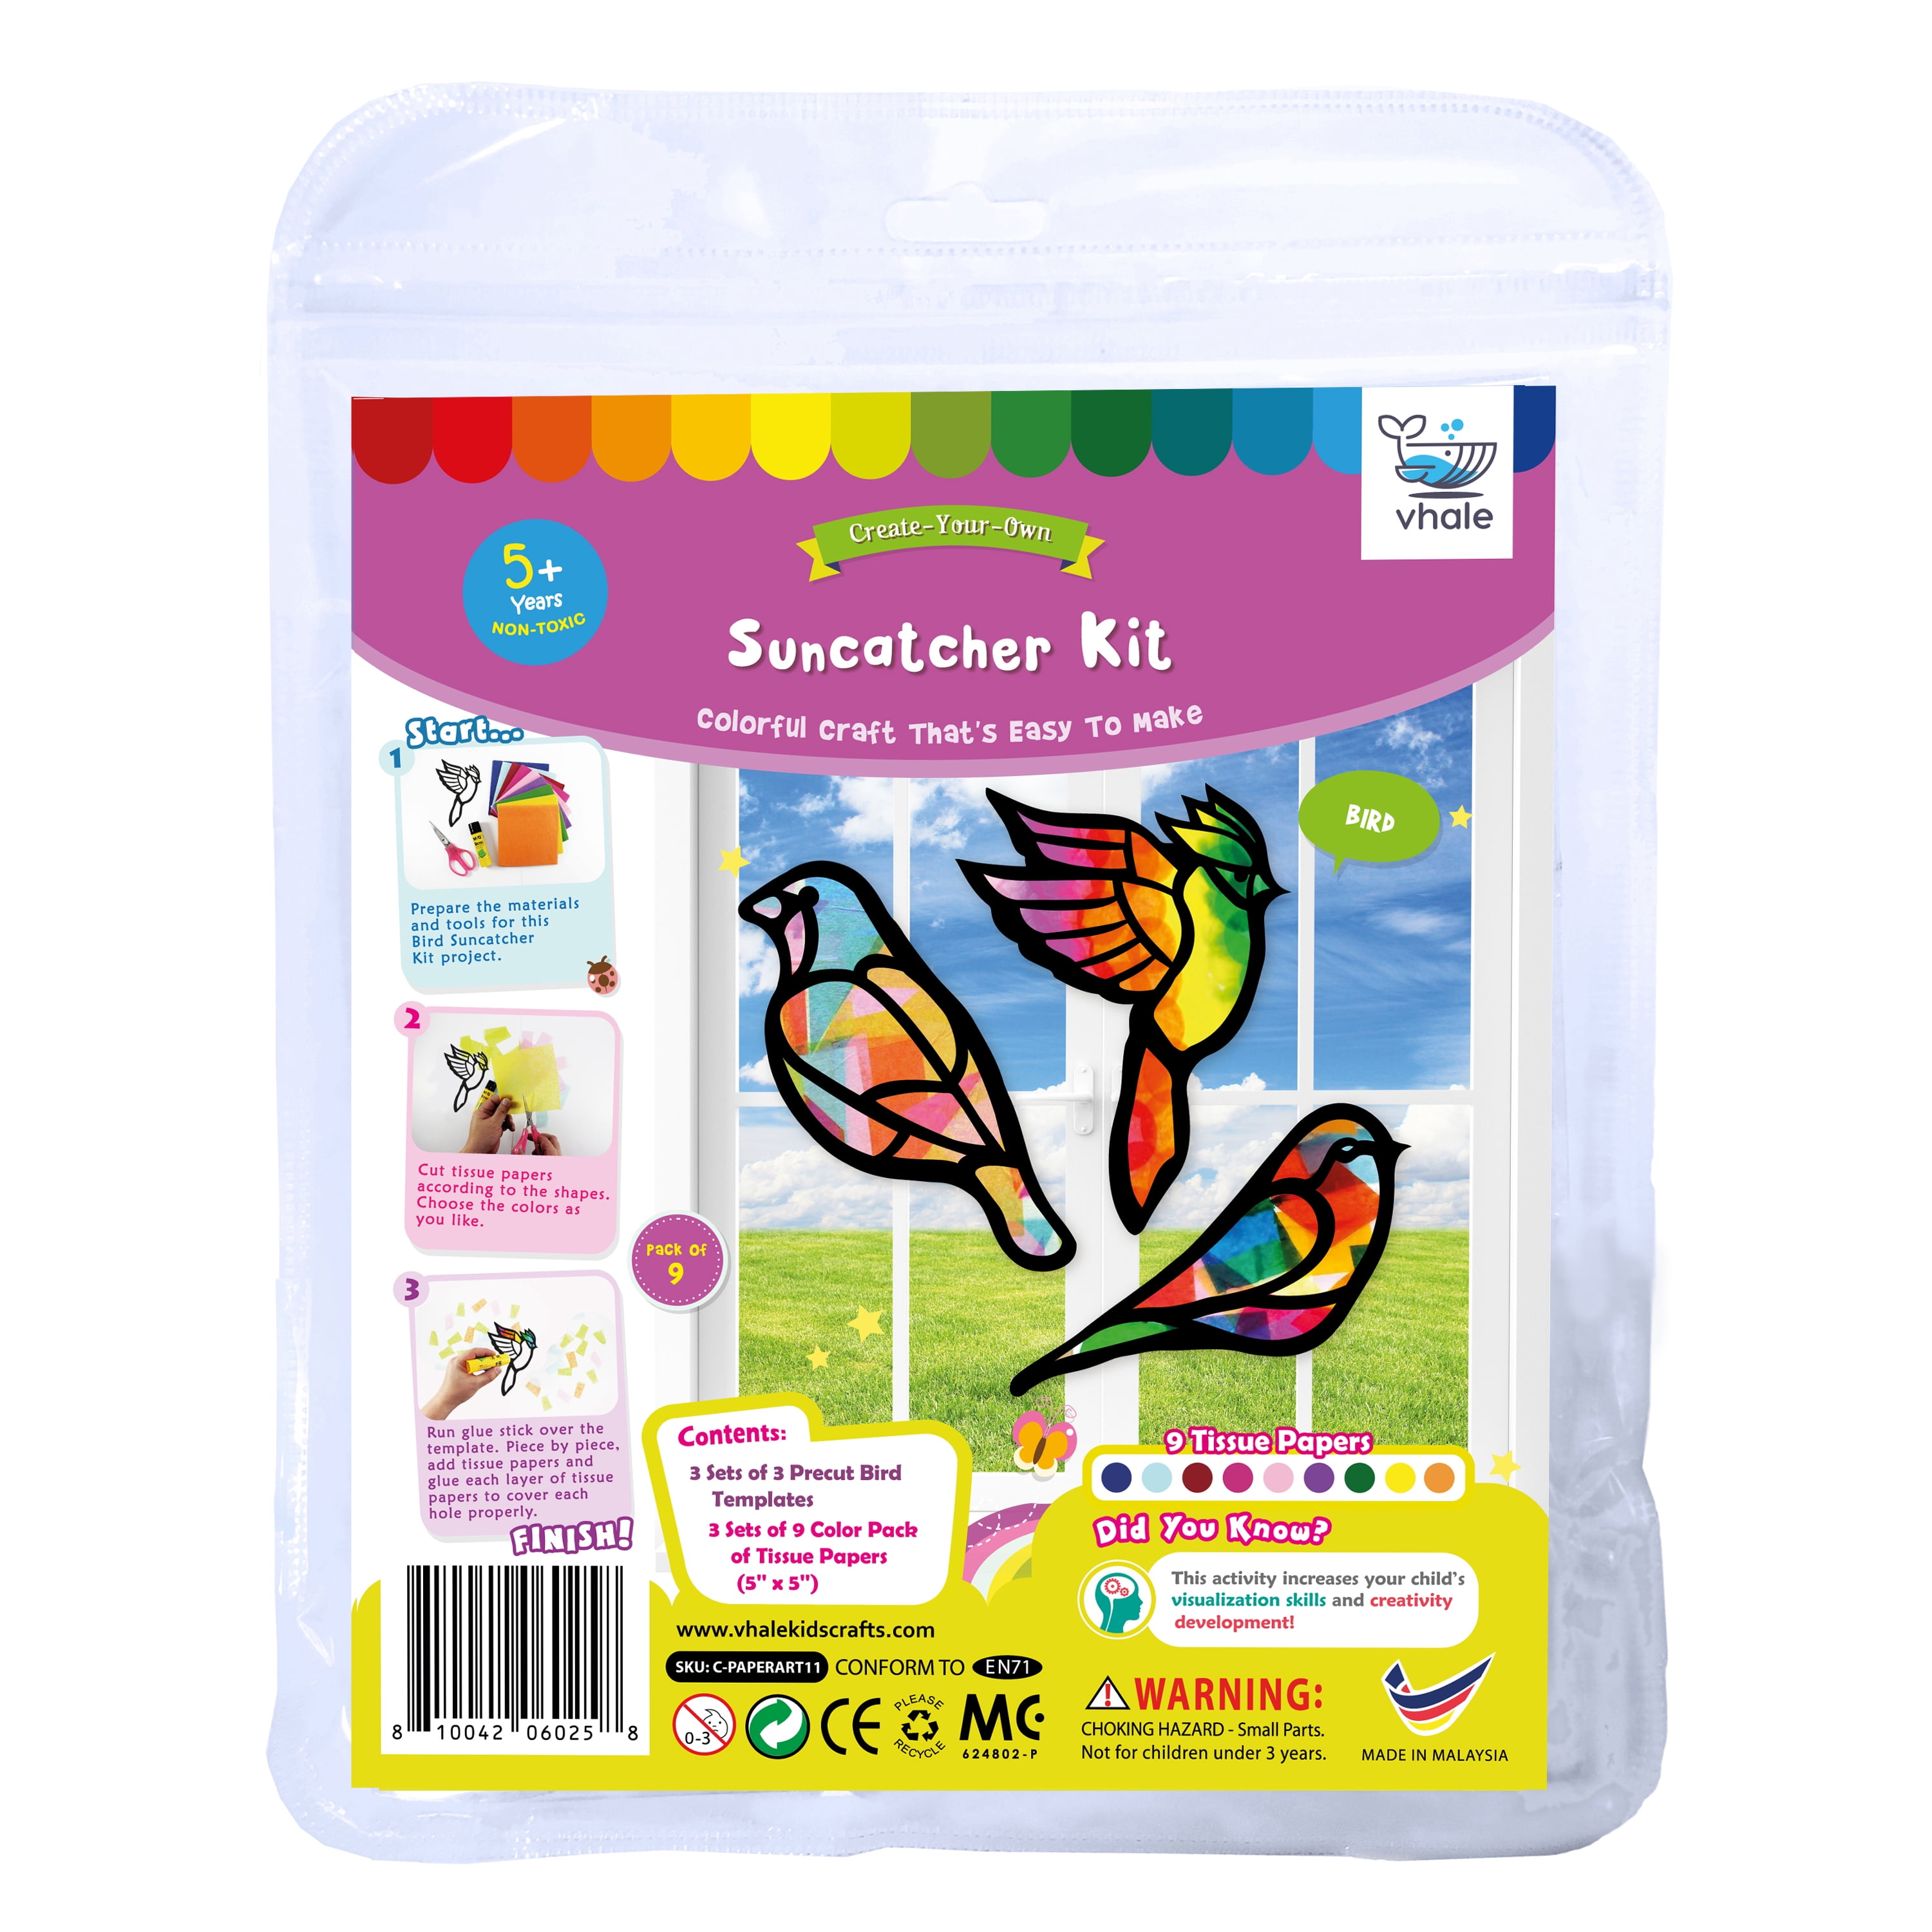 KLEVER KITS 24PCS DIY Window Sun Catchers,Paint Art Craft Kit for Kids  Unisex 